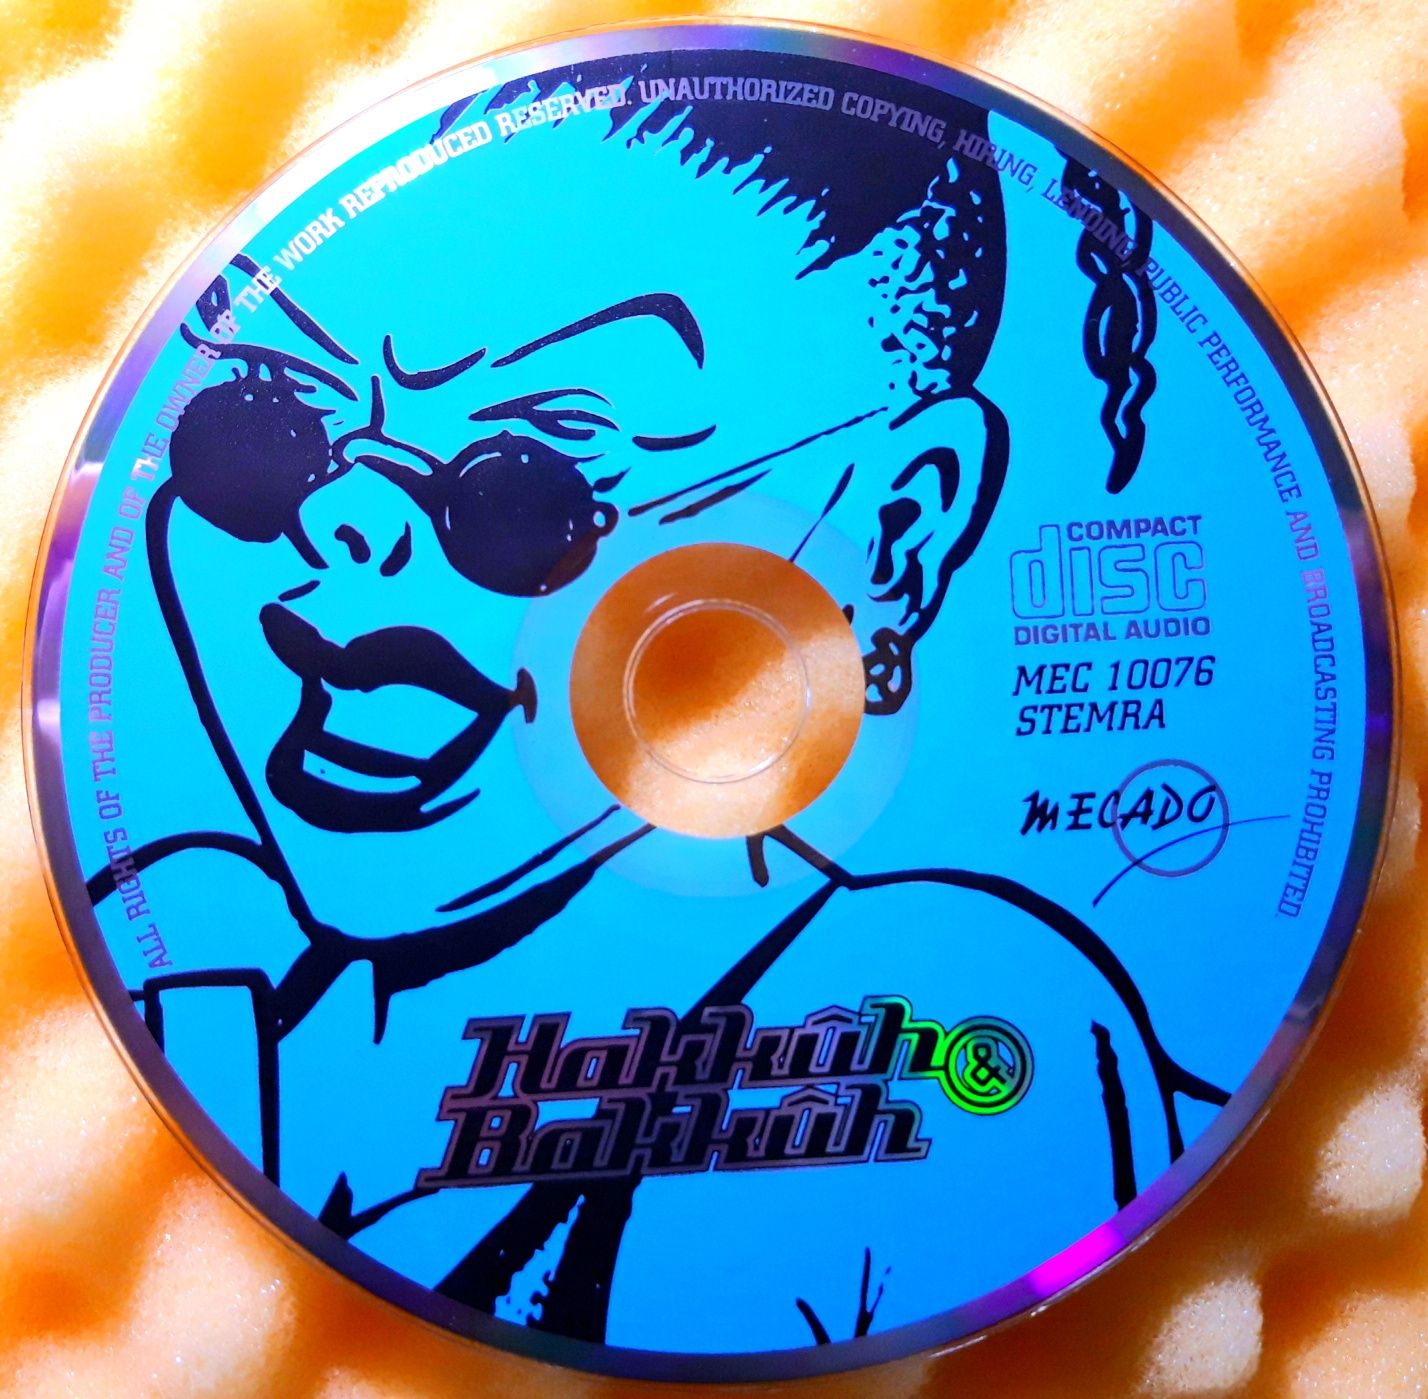 Hakkuh & Bakkuh (CD, 1997)